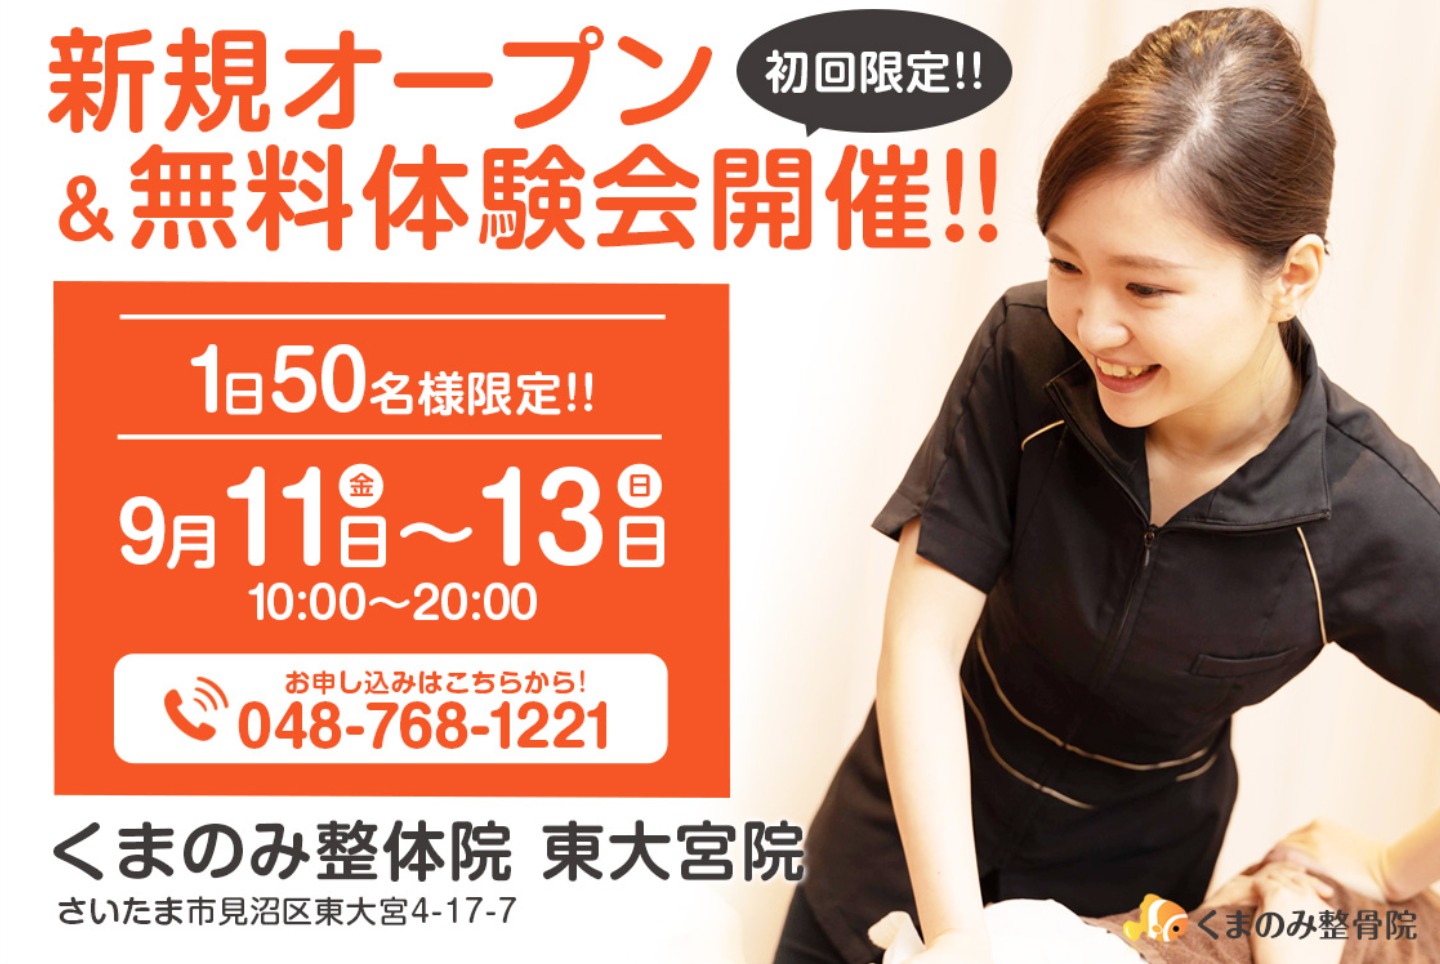 埼玉県口コミno 1 くまのみ整体院 東大宮院が9月11日にオープン 無料体験イベントあり